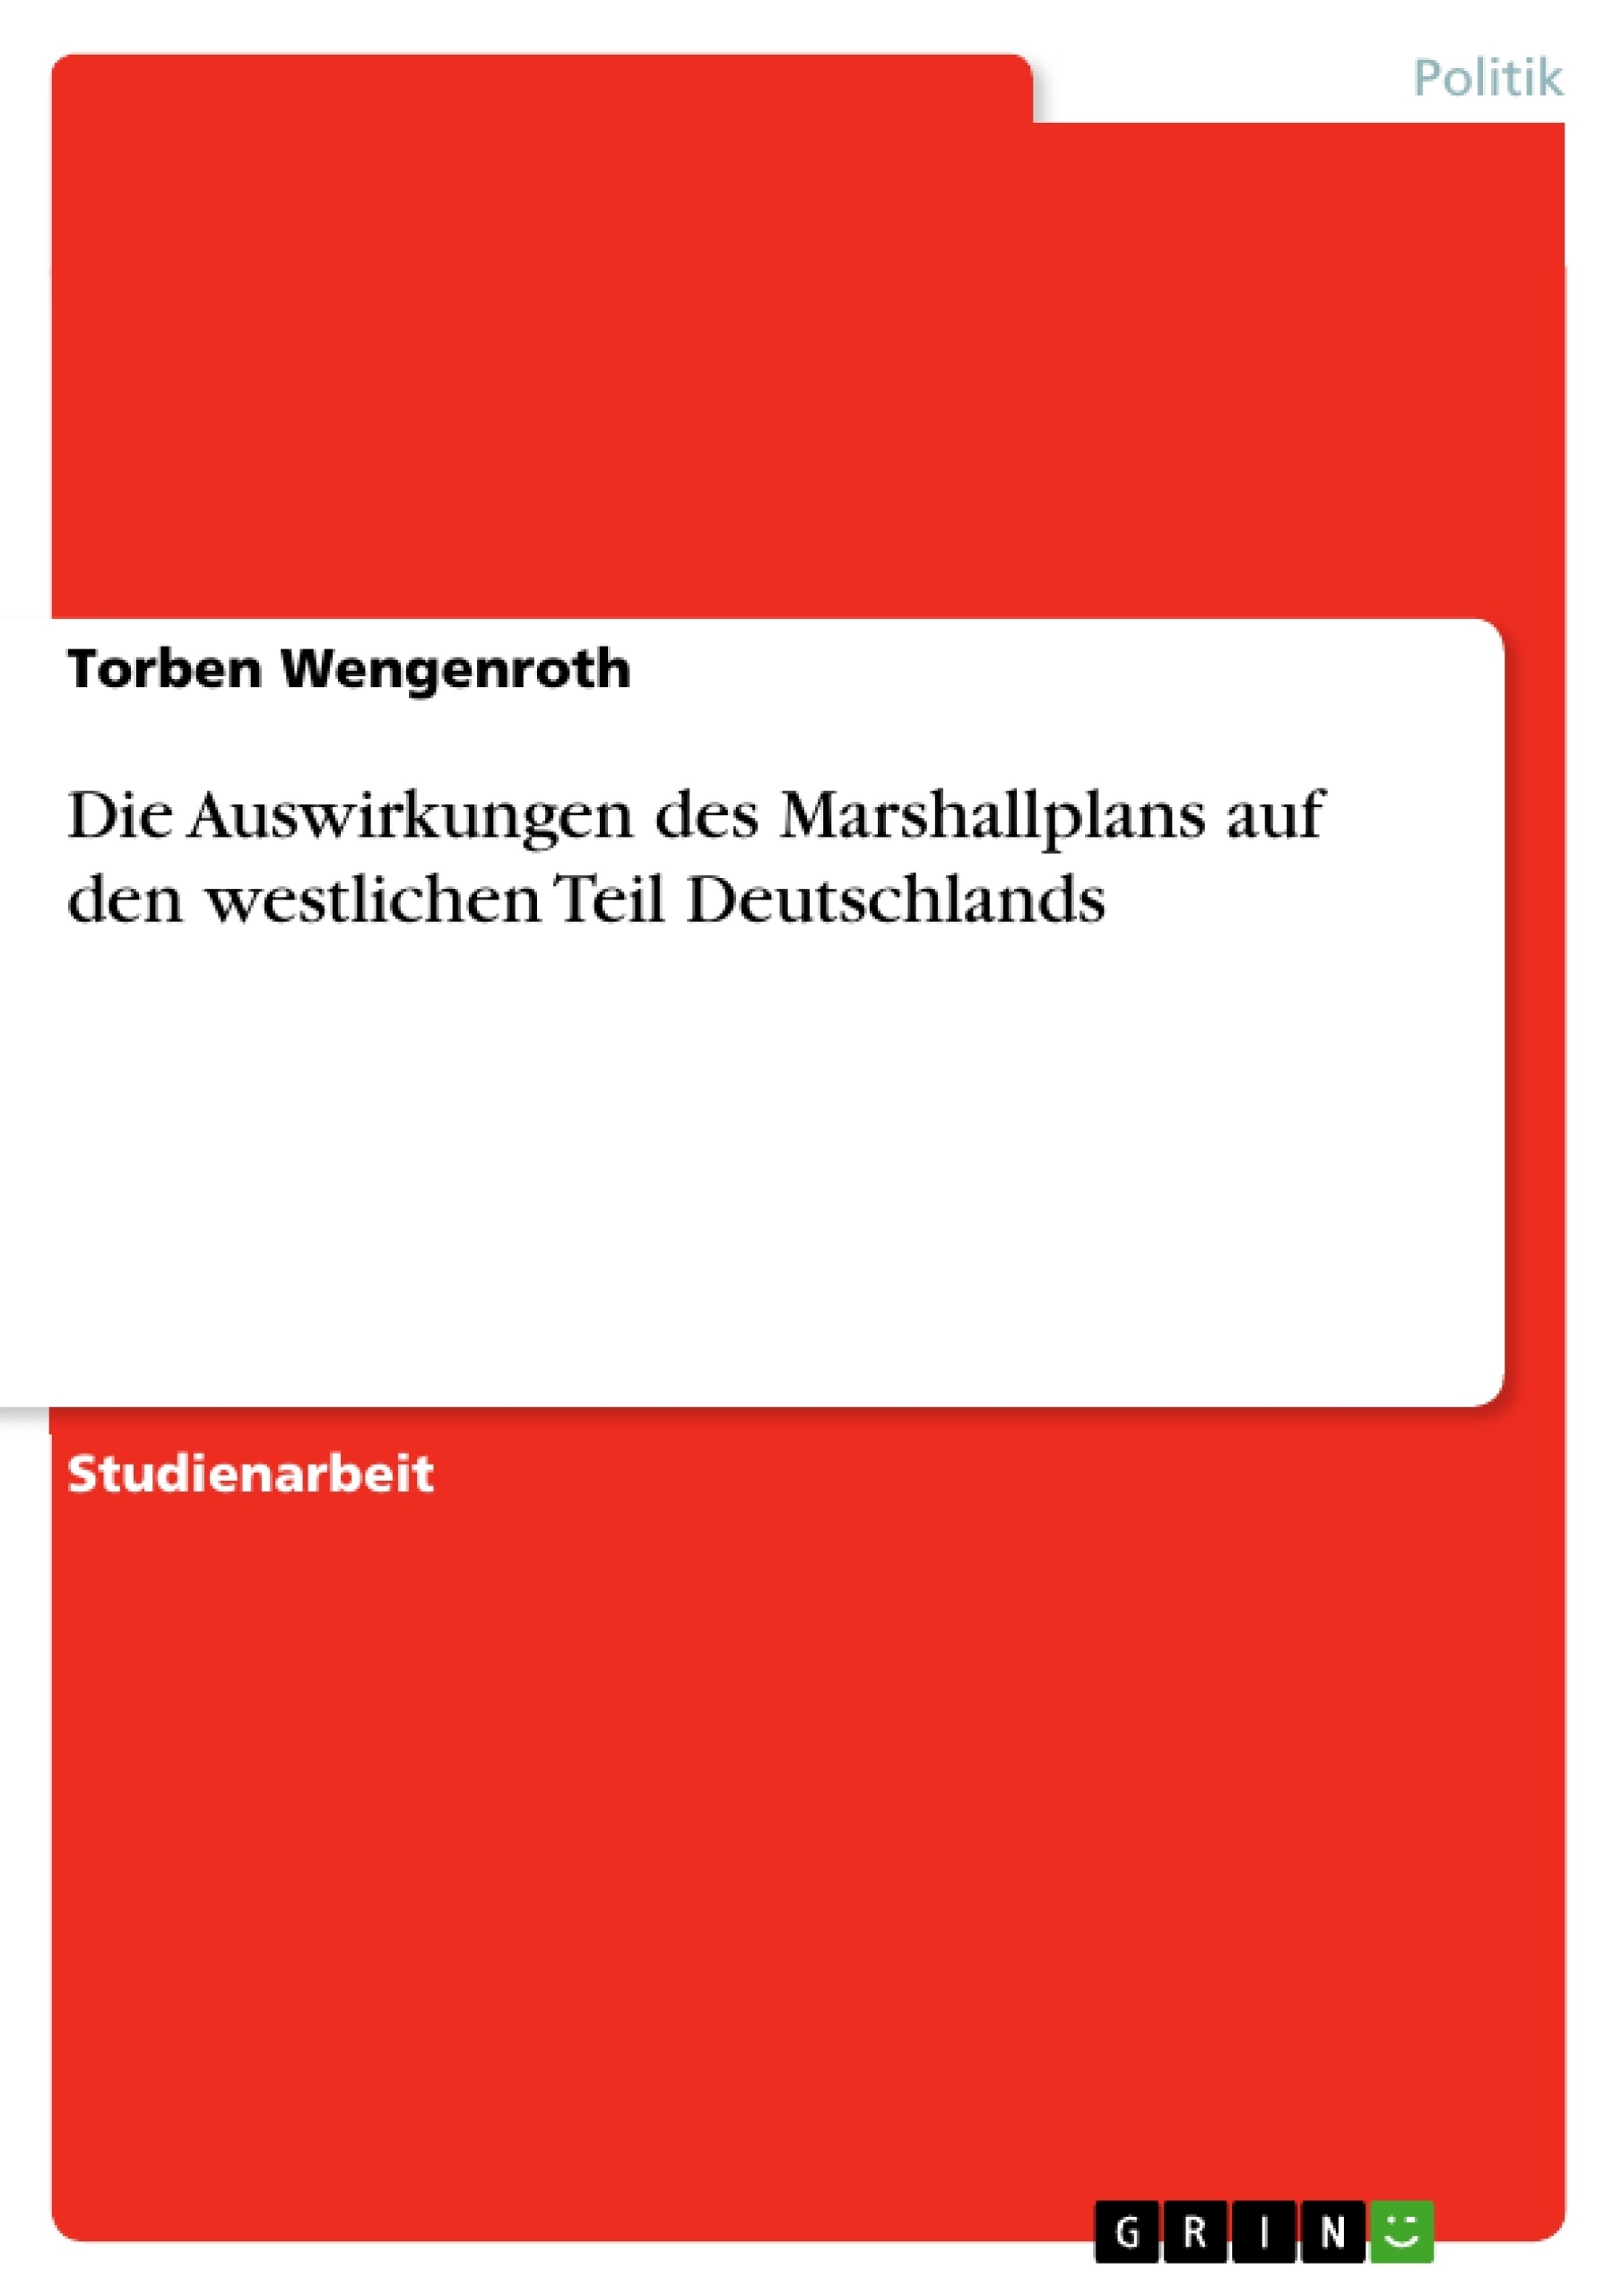 Titel: Die Auswirkungen des Marshallplans auf den westlichen Teil Deutschlands